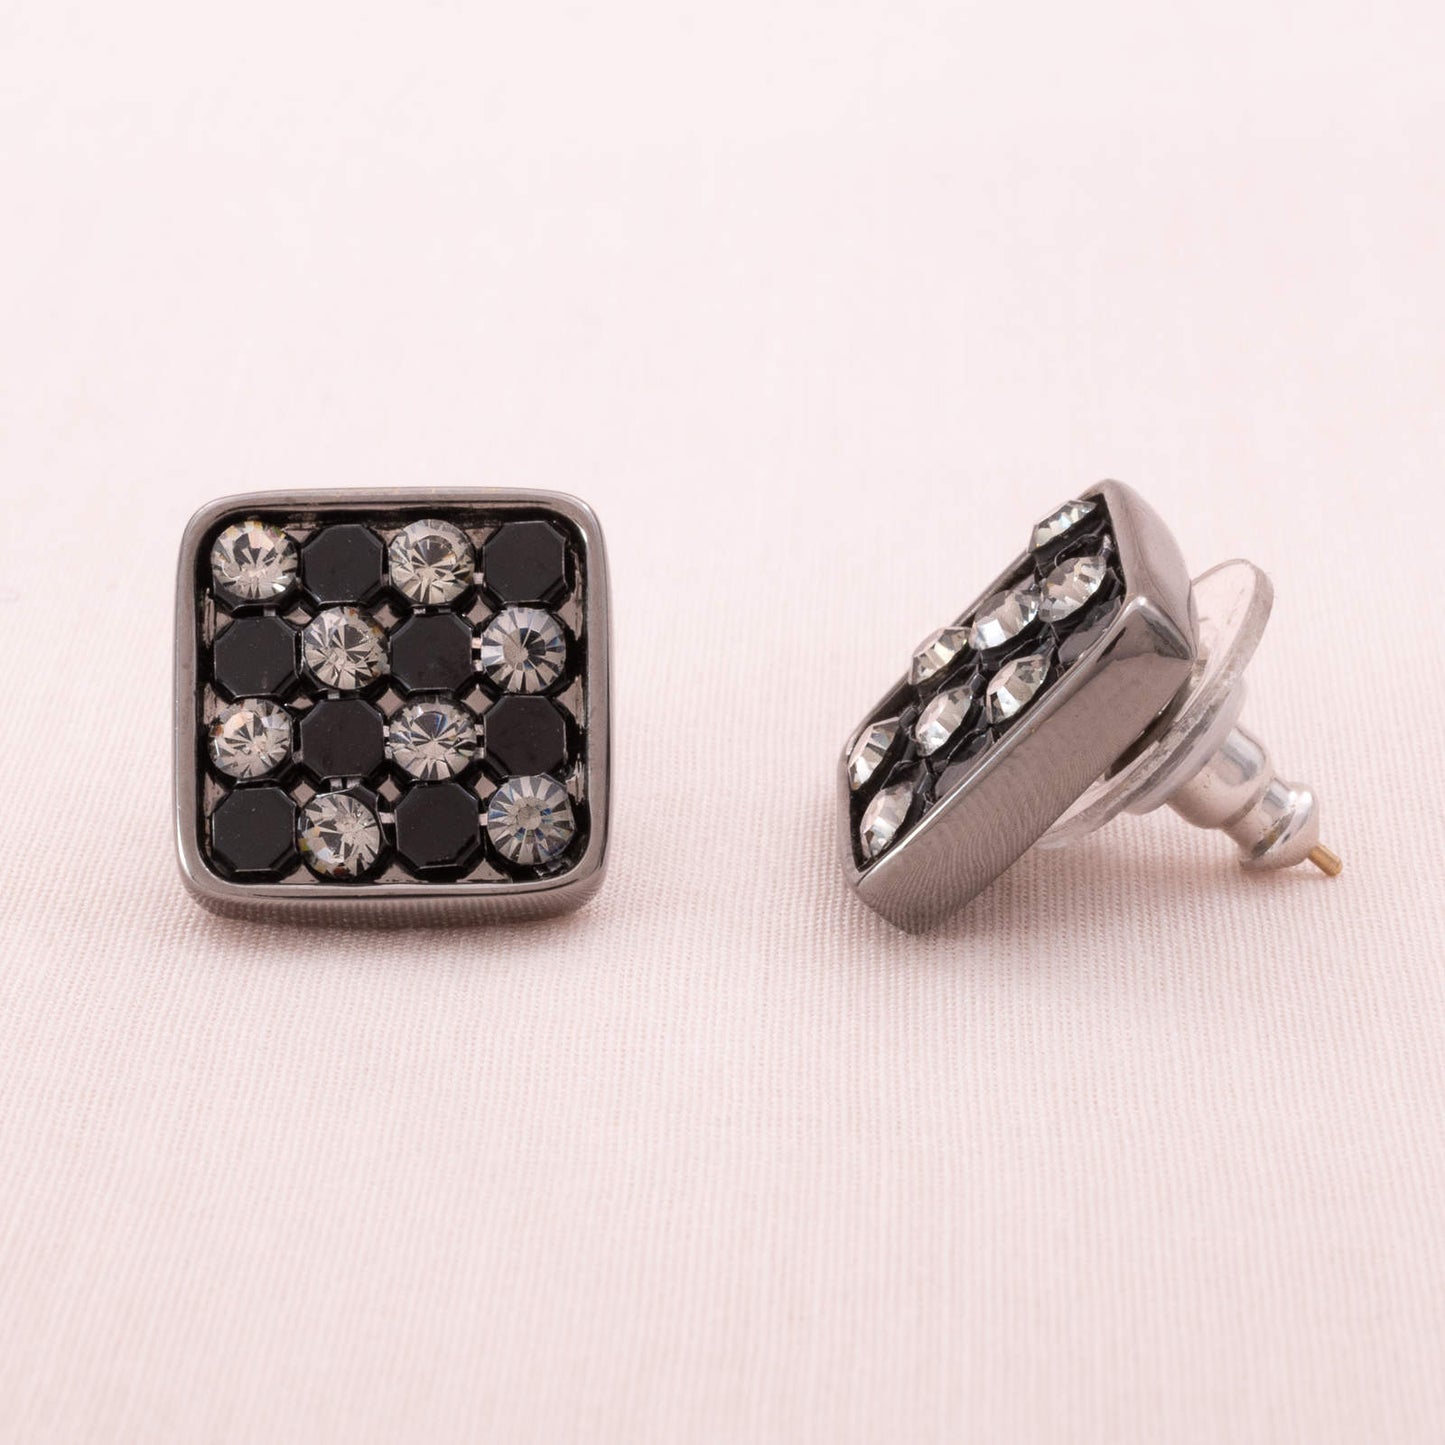 Swarovski-eckige-Ohrringe-mit-schwarz-grauen-Kristallen